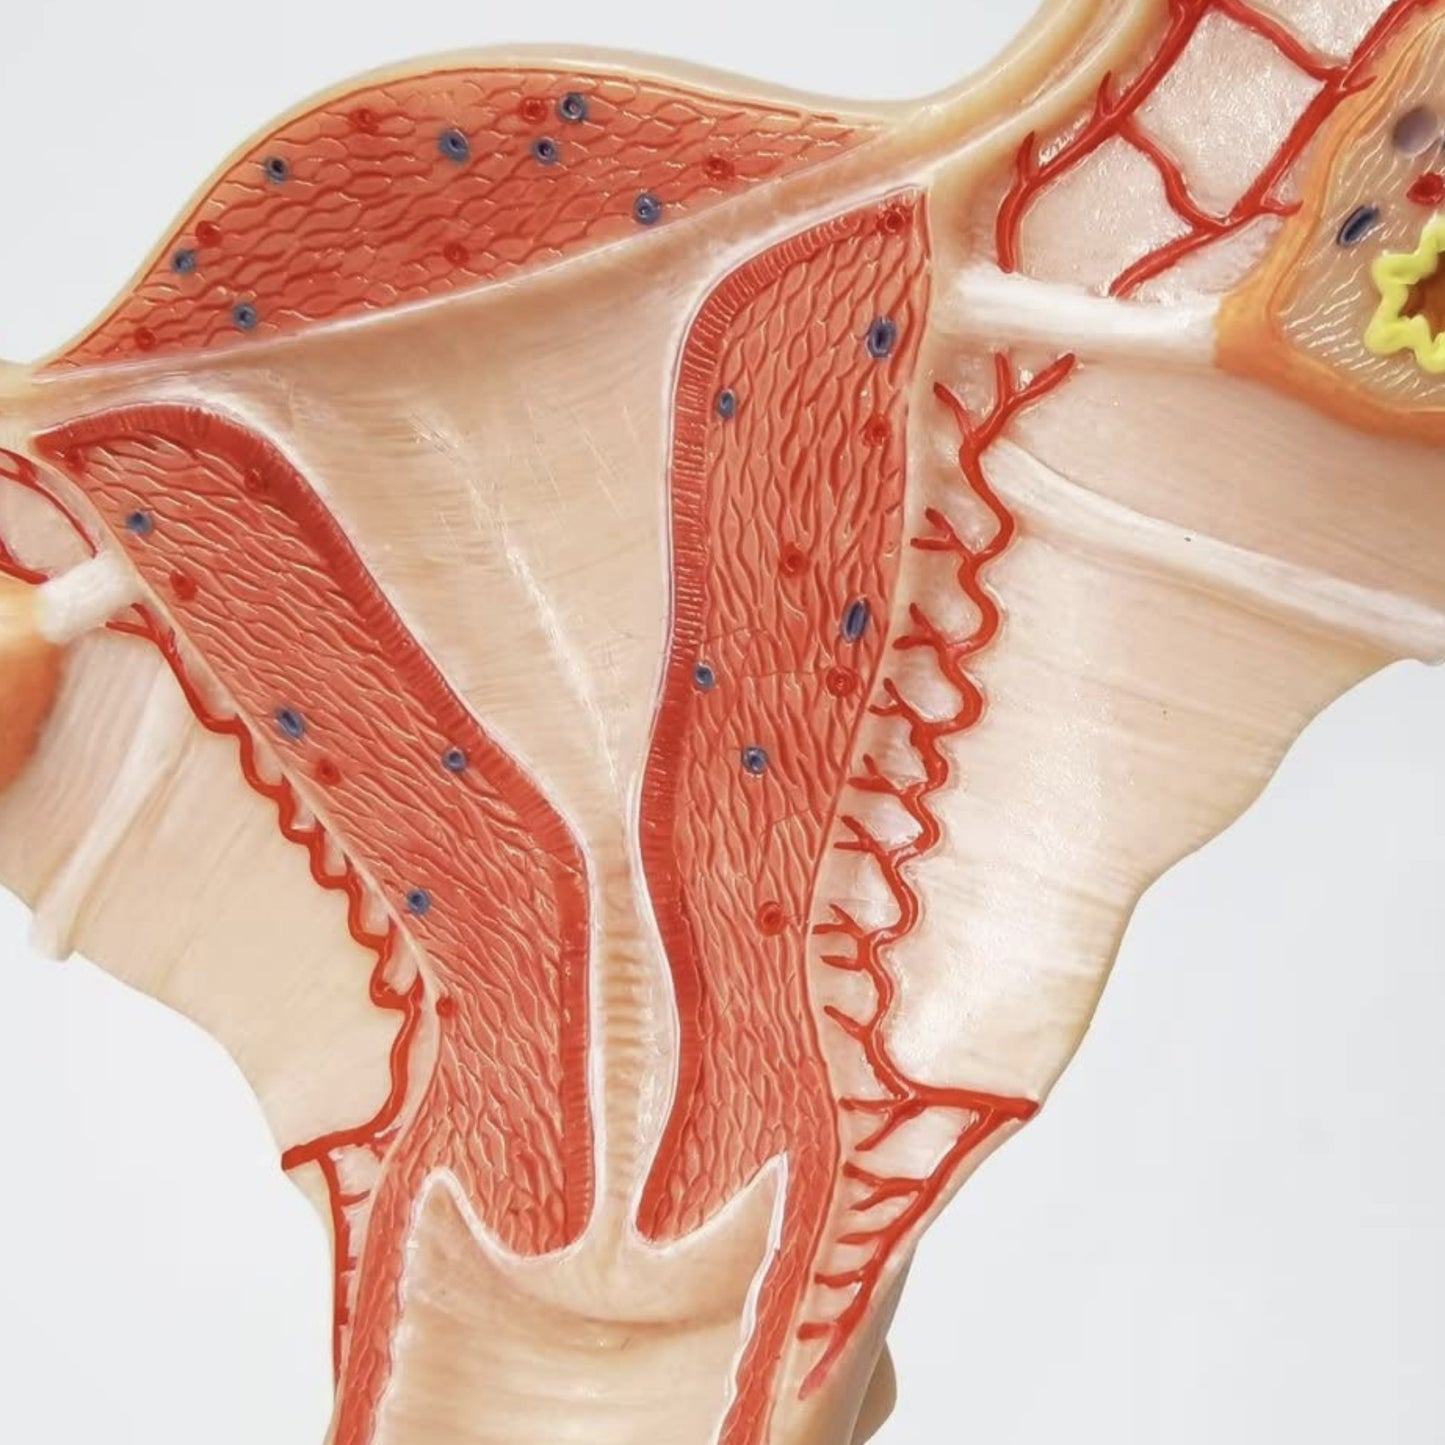 Anatomisk modell av de kvinnliga inre könsorganen